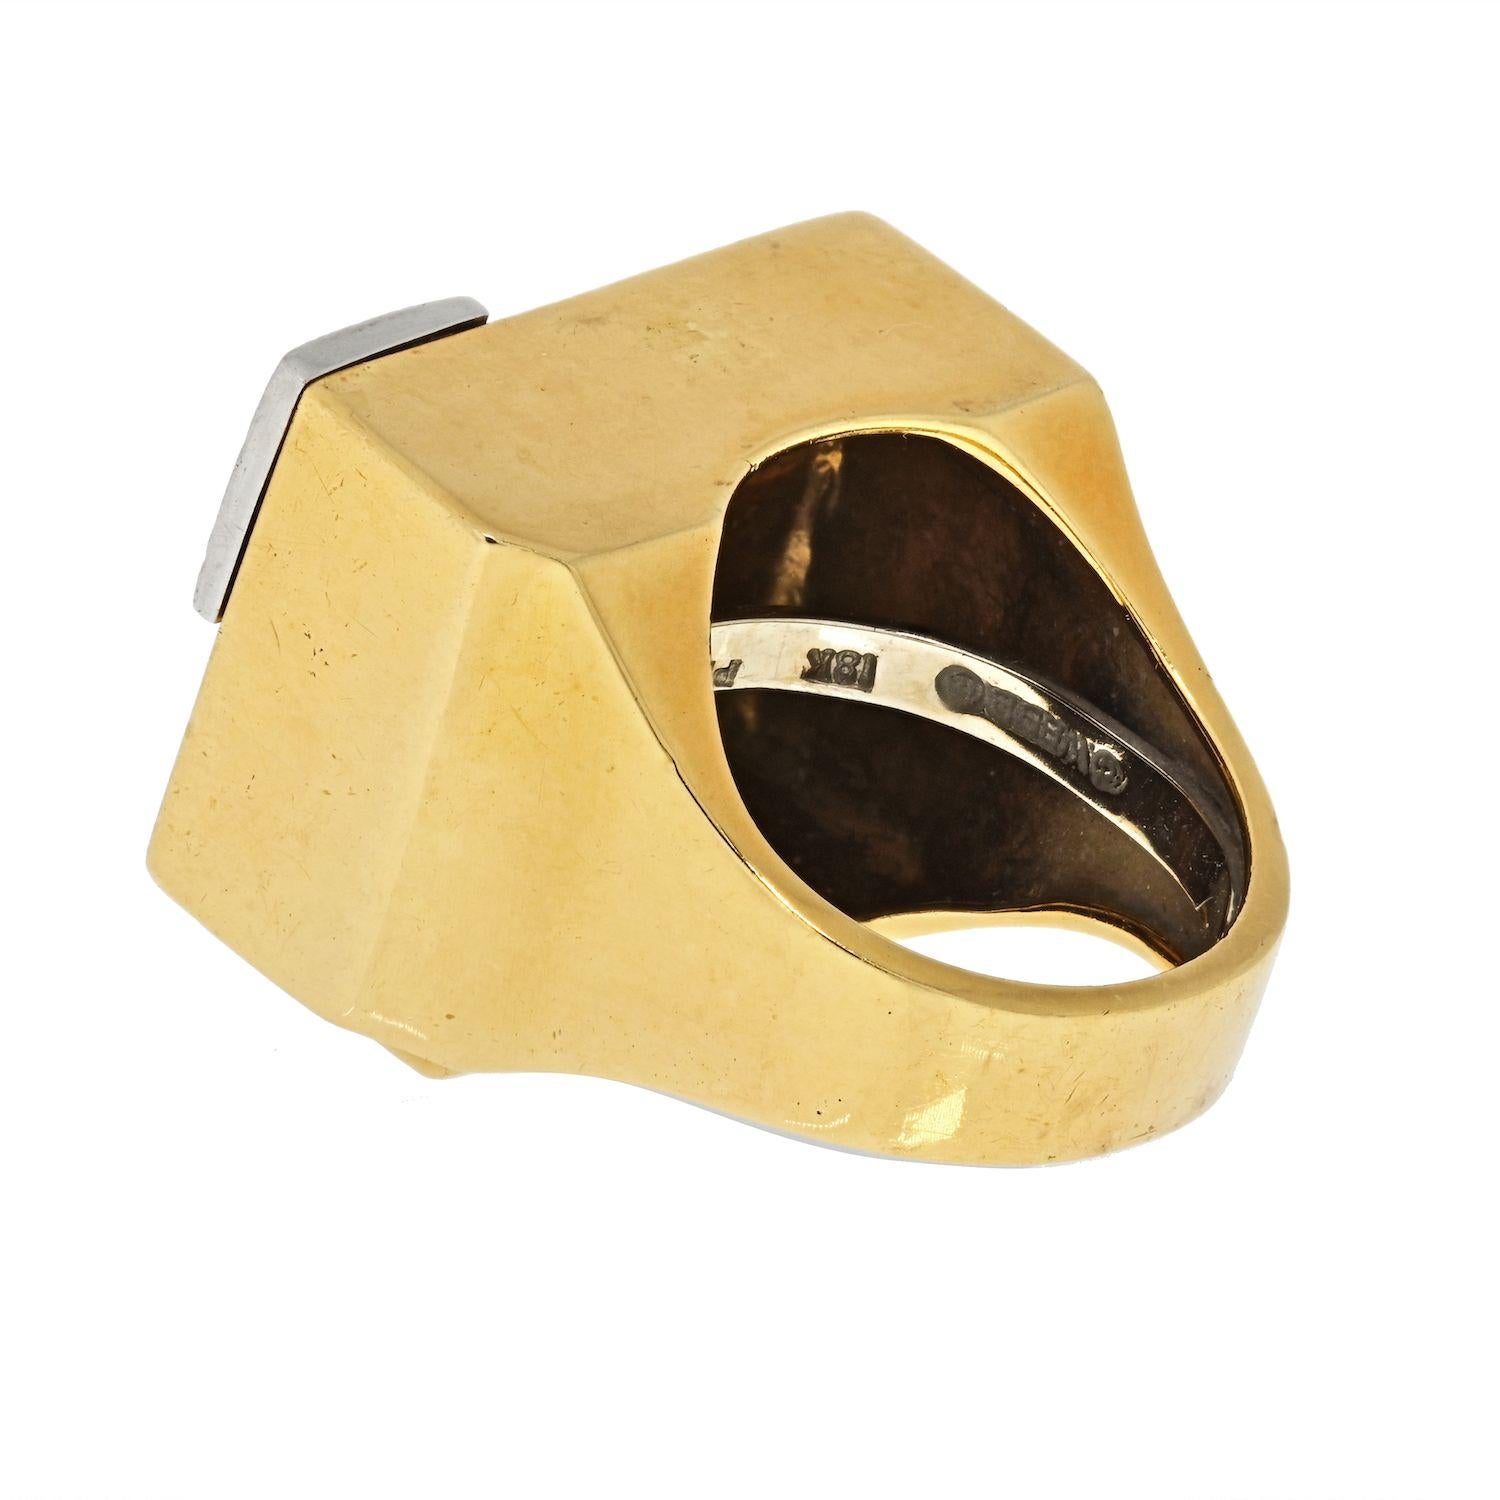 Dies ist ein Vintage-Ring von David Webb, mit schwarzer Emaille und weißen Diamanten in 18k Gelbgold, mit runden Diamanten im Brillantschliff montiert. 
Obere Gesamtbreite: 19 mm
Obere Gesamtlänge: 26 mm
Mit der Platin-Größenfeder im Inneren für